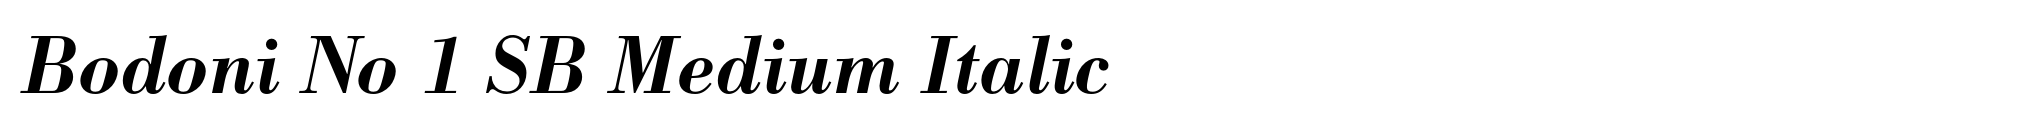 Bodoni No 1 SB Medium Italic image